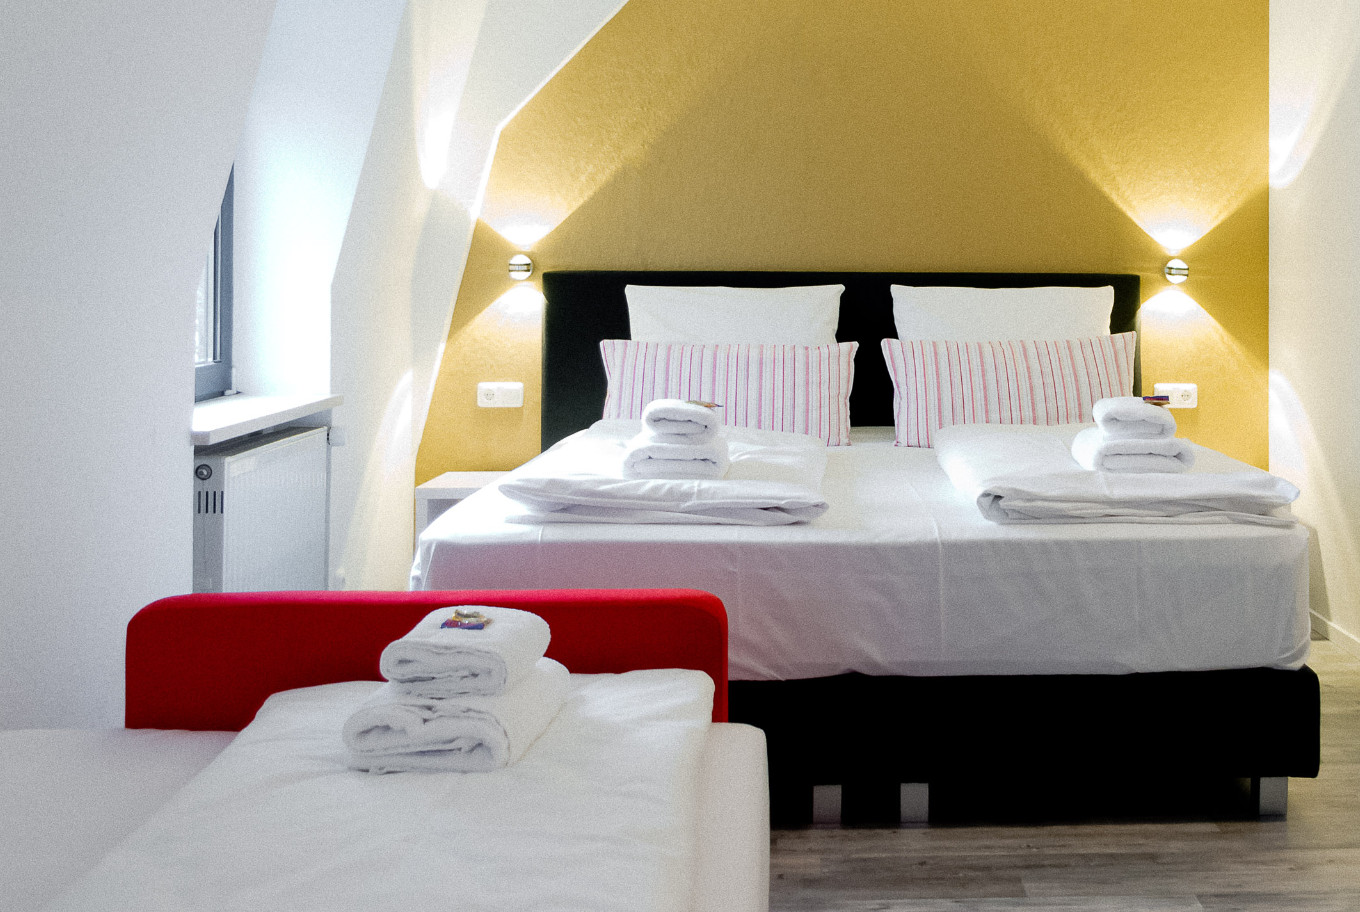 Das Dreibettzimmer in unserem Hotel in Augsburg.